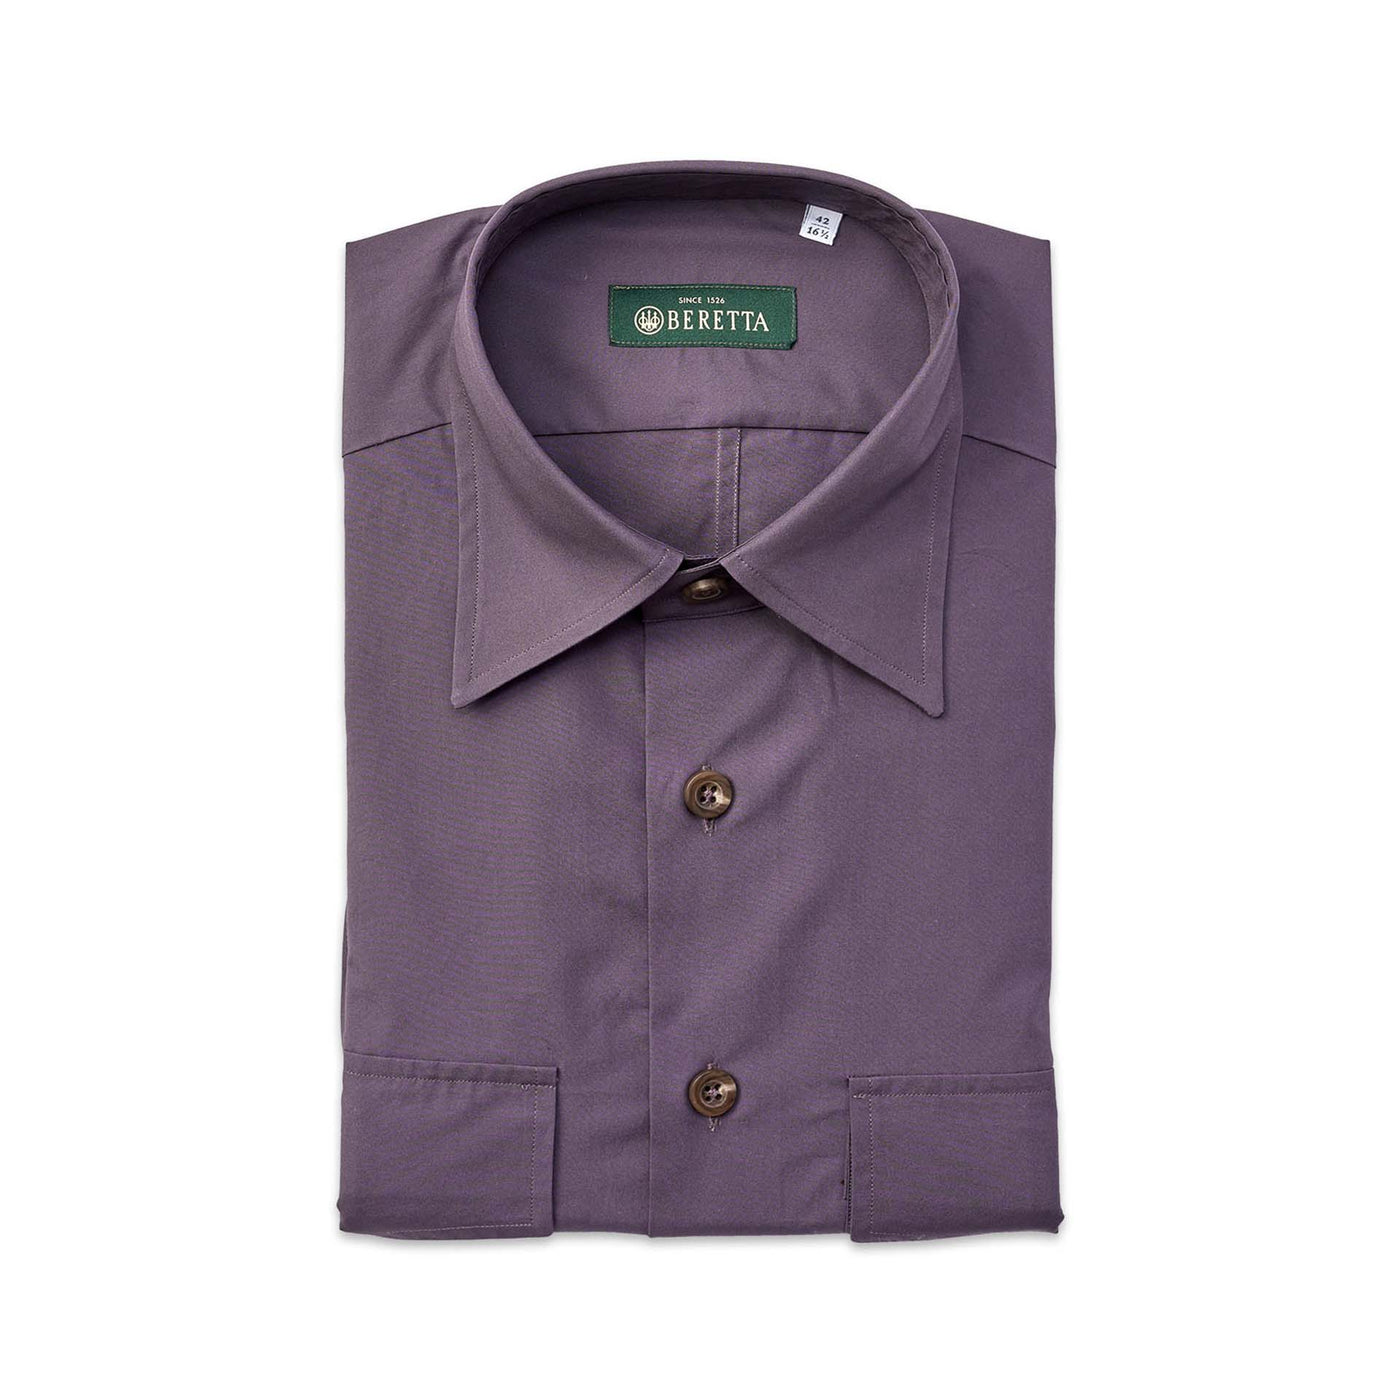 Shop Men's Miltary Shirt - Brown | Beretta Gallery USA